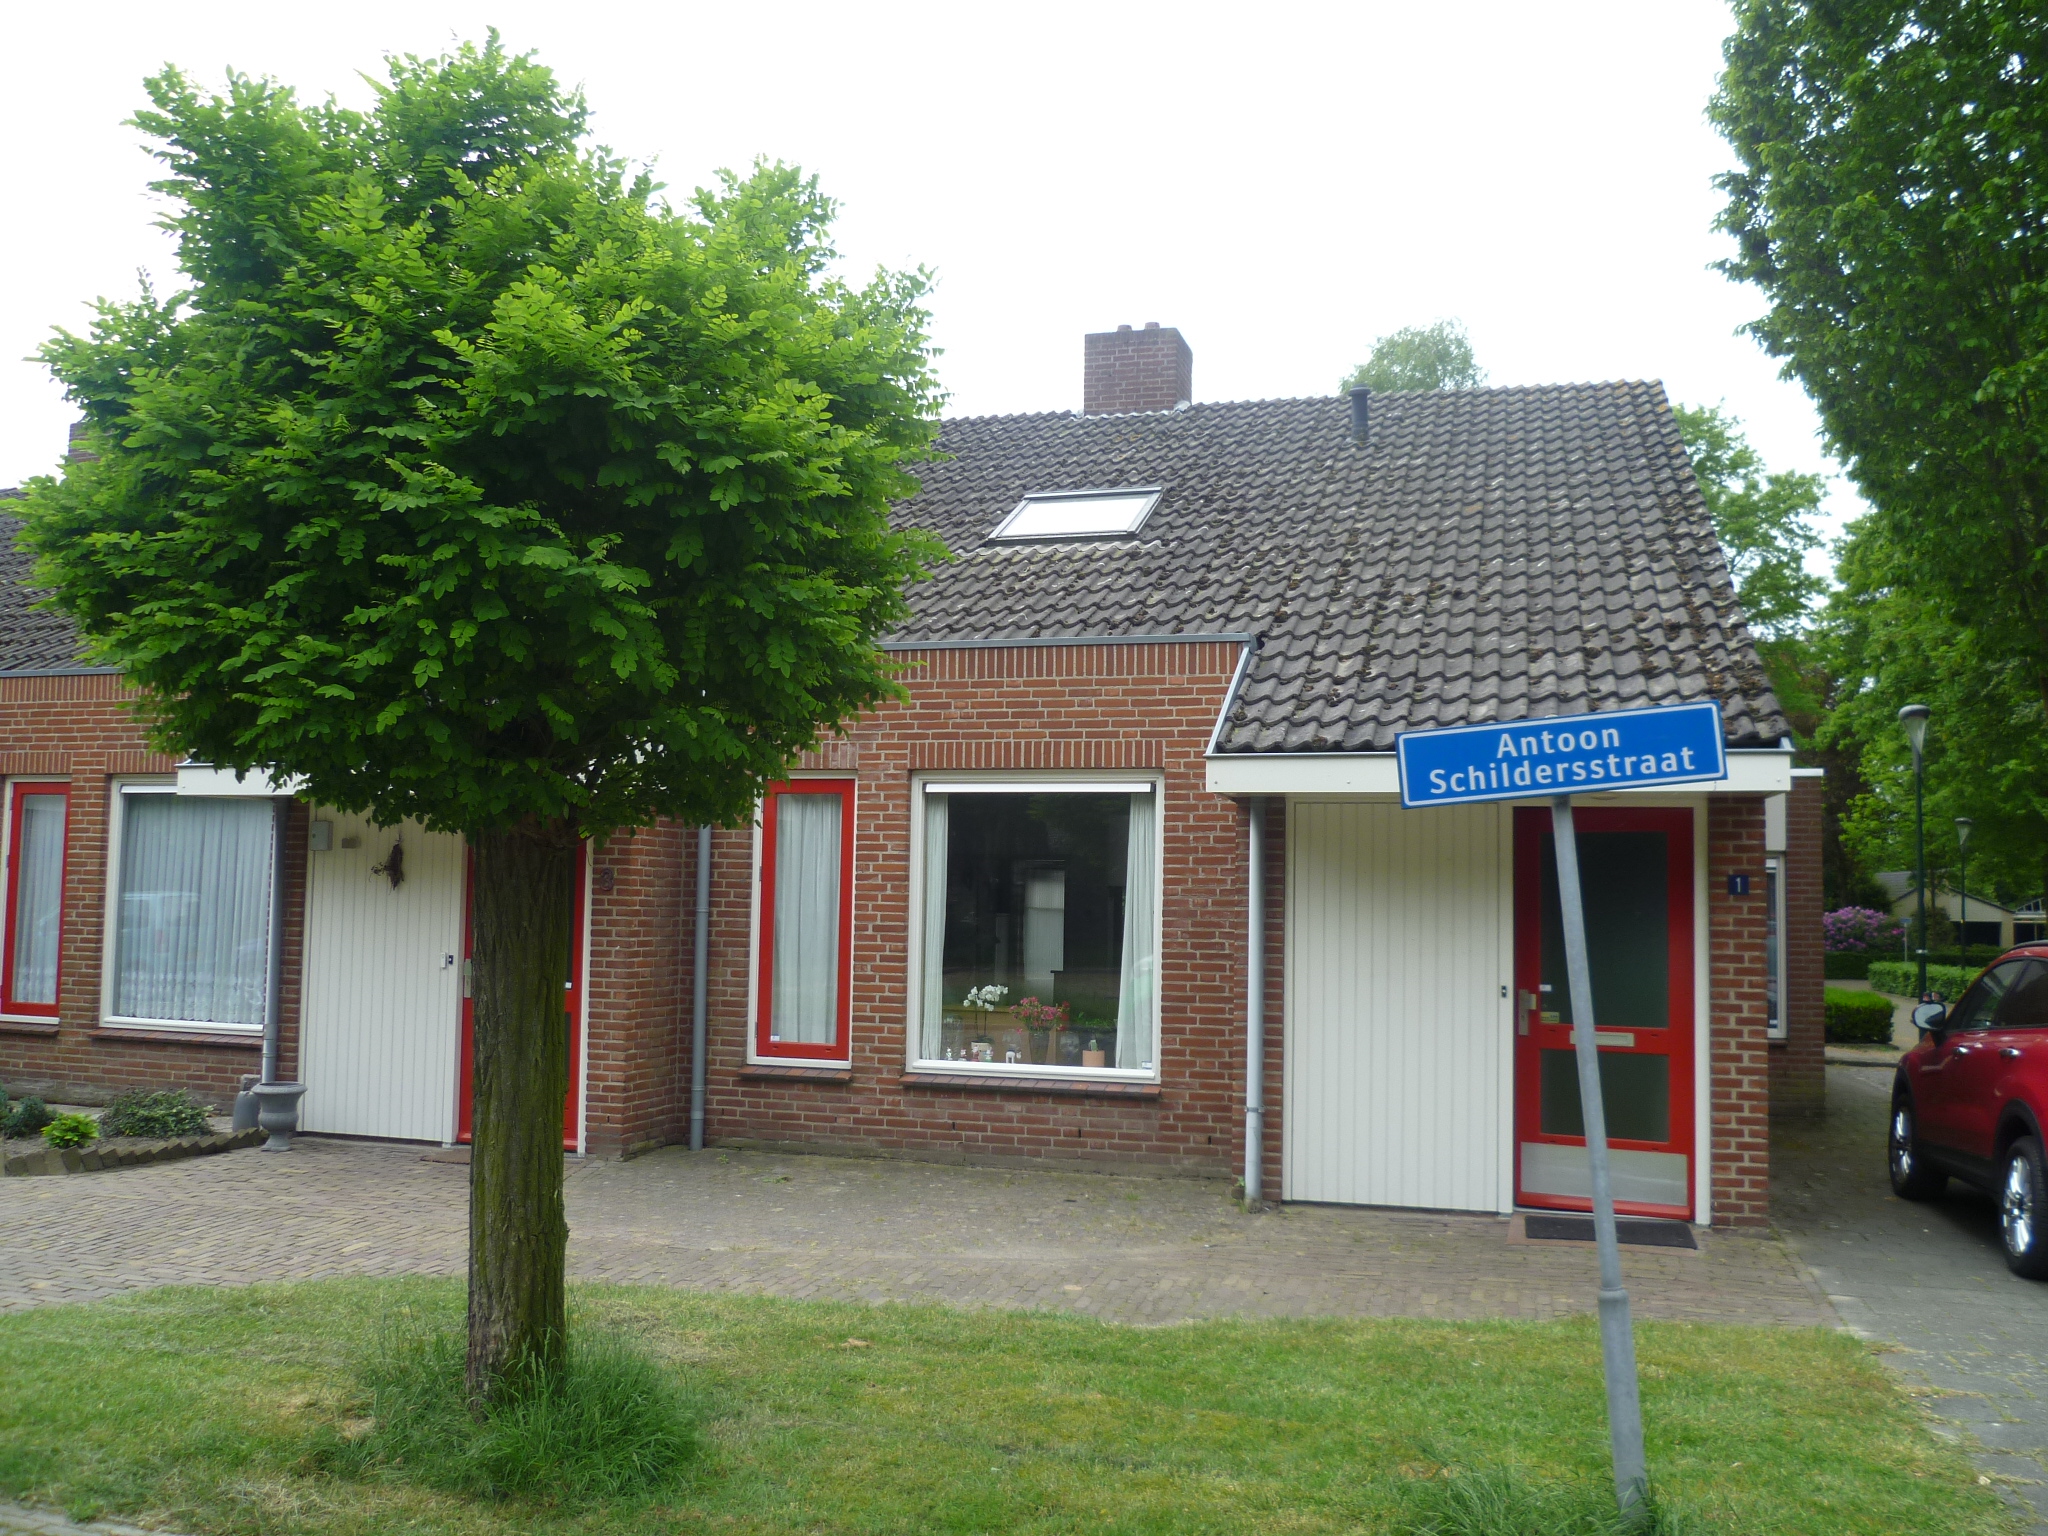 Antoon Schildersstraat 1, 5527 GZ Hapert, Nederland